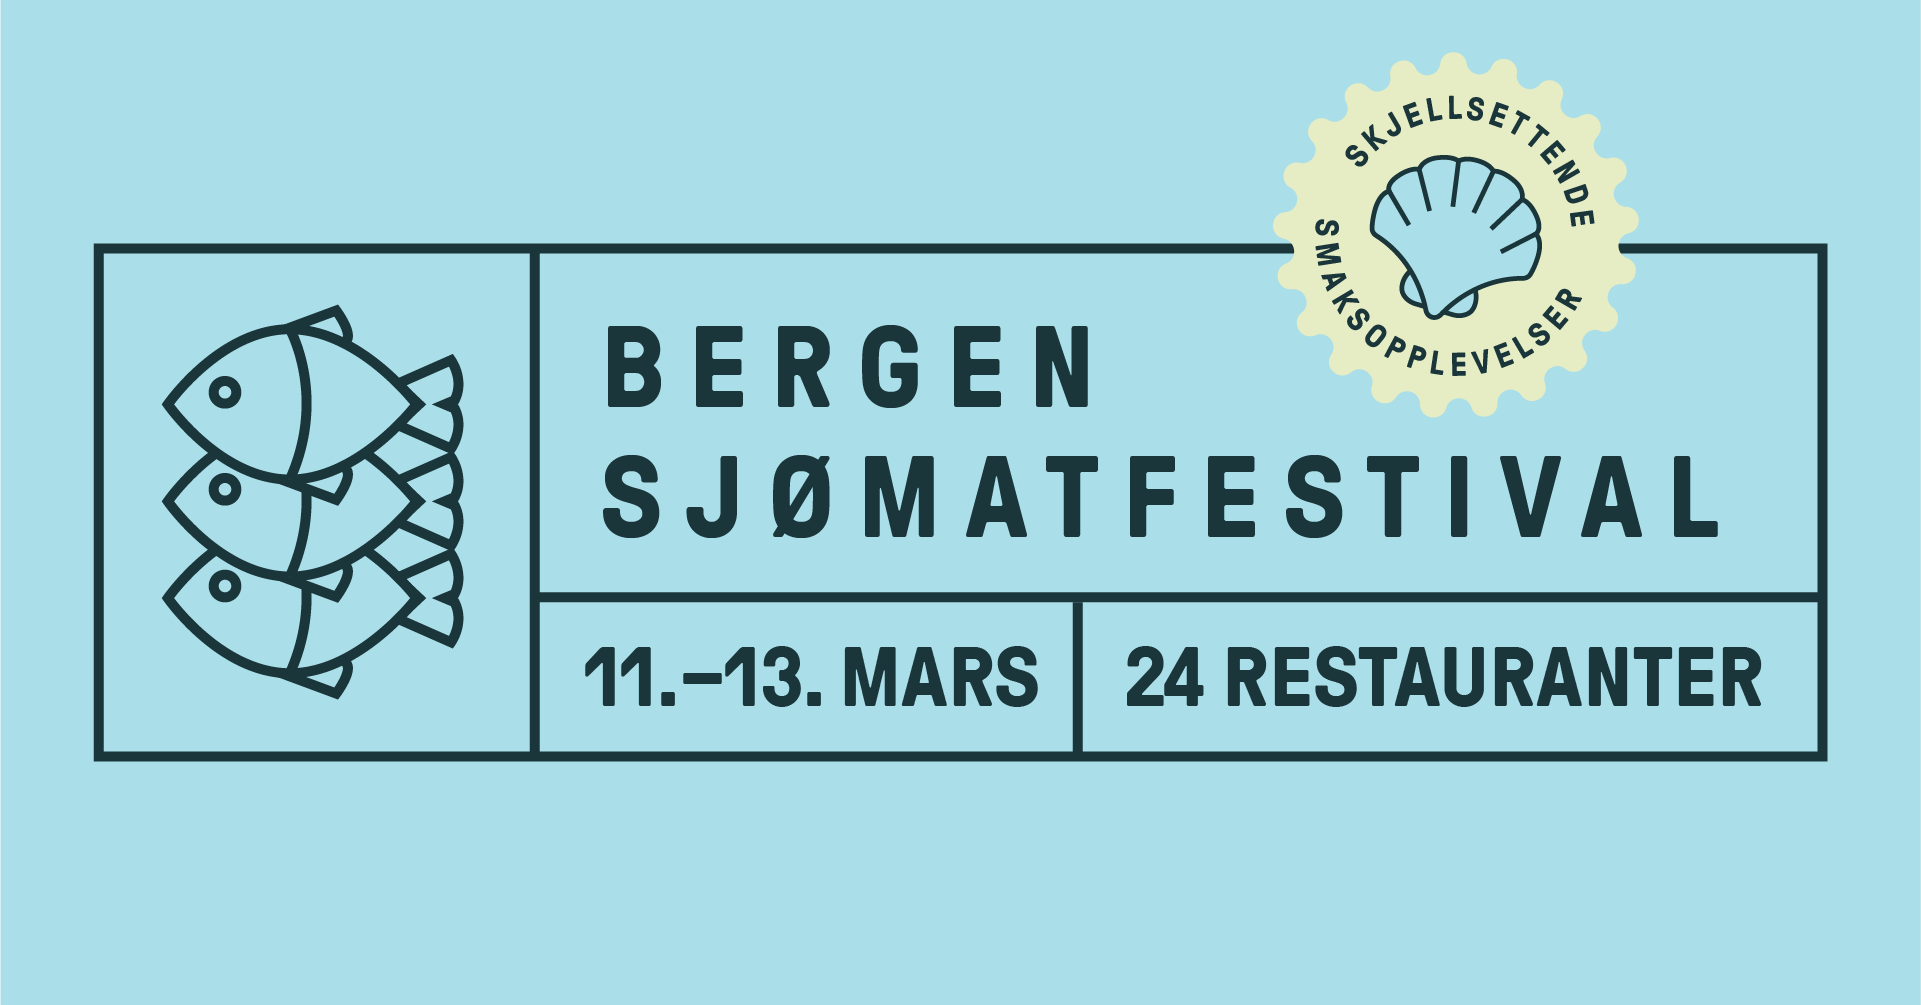 Ny sjømatfestival i Bergen